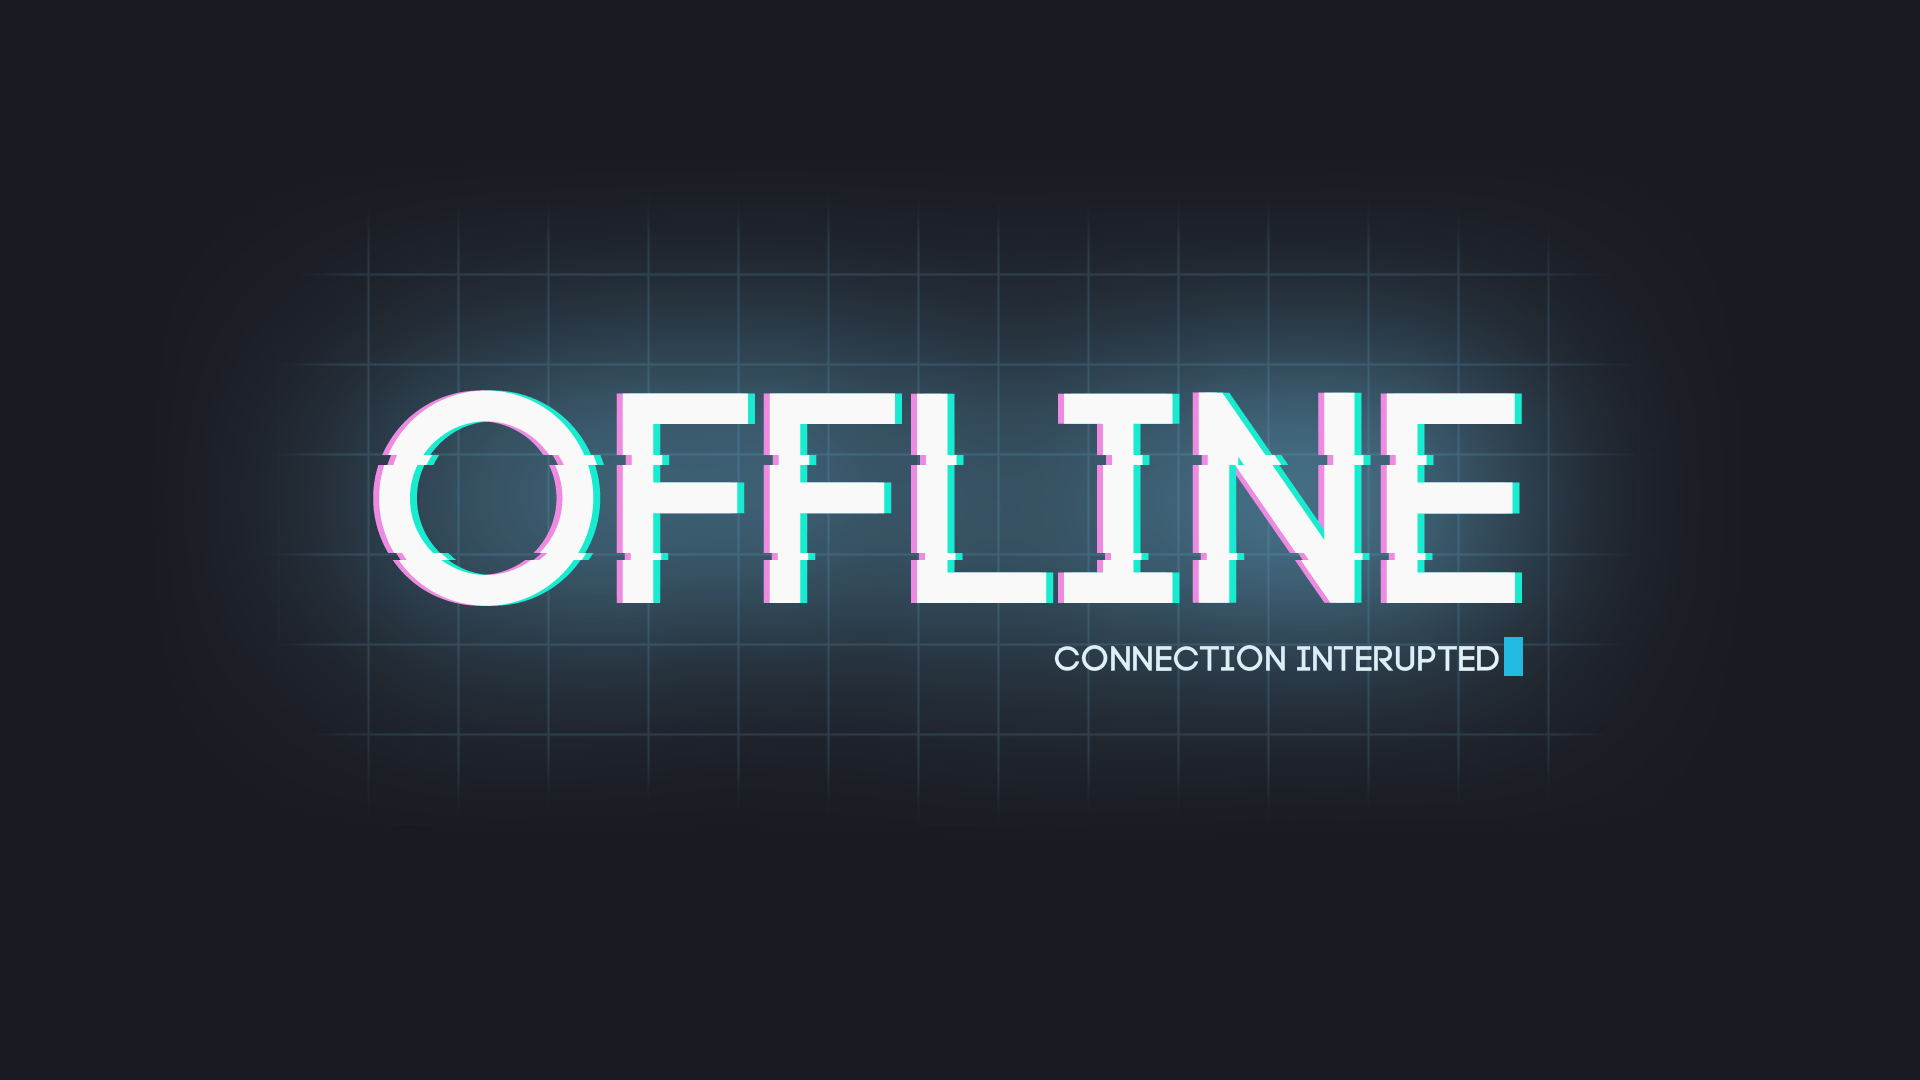 remotepc shows offline